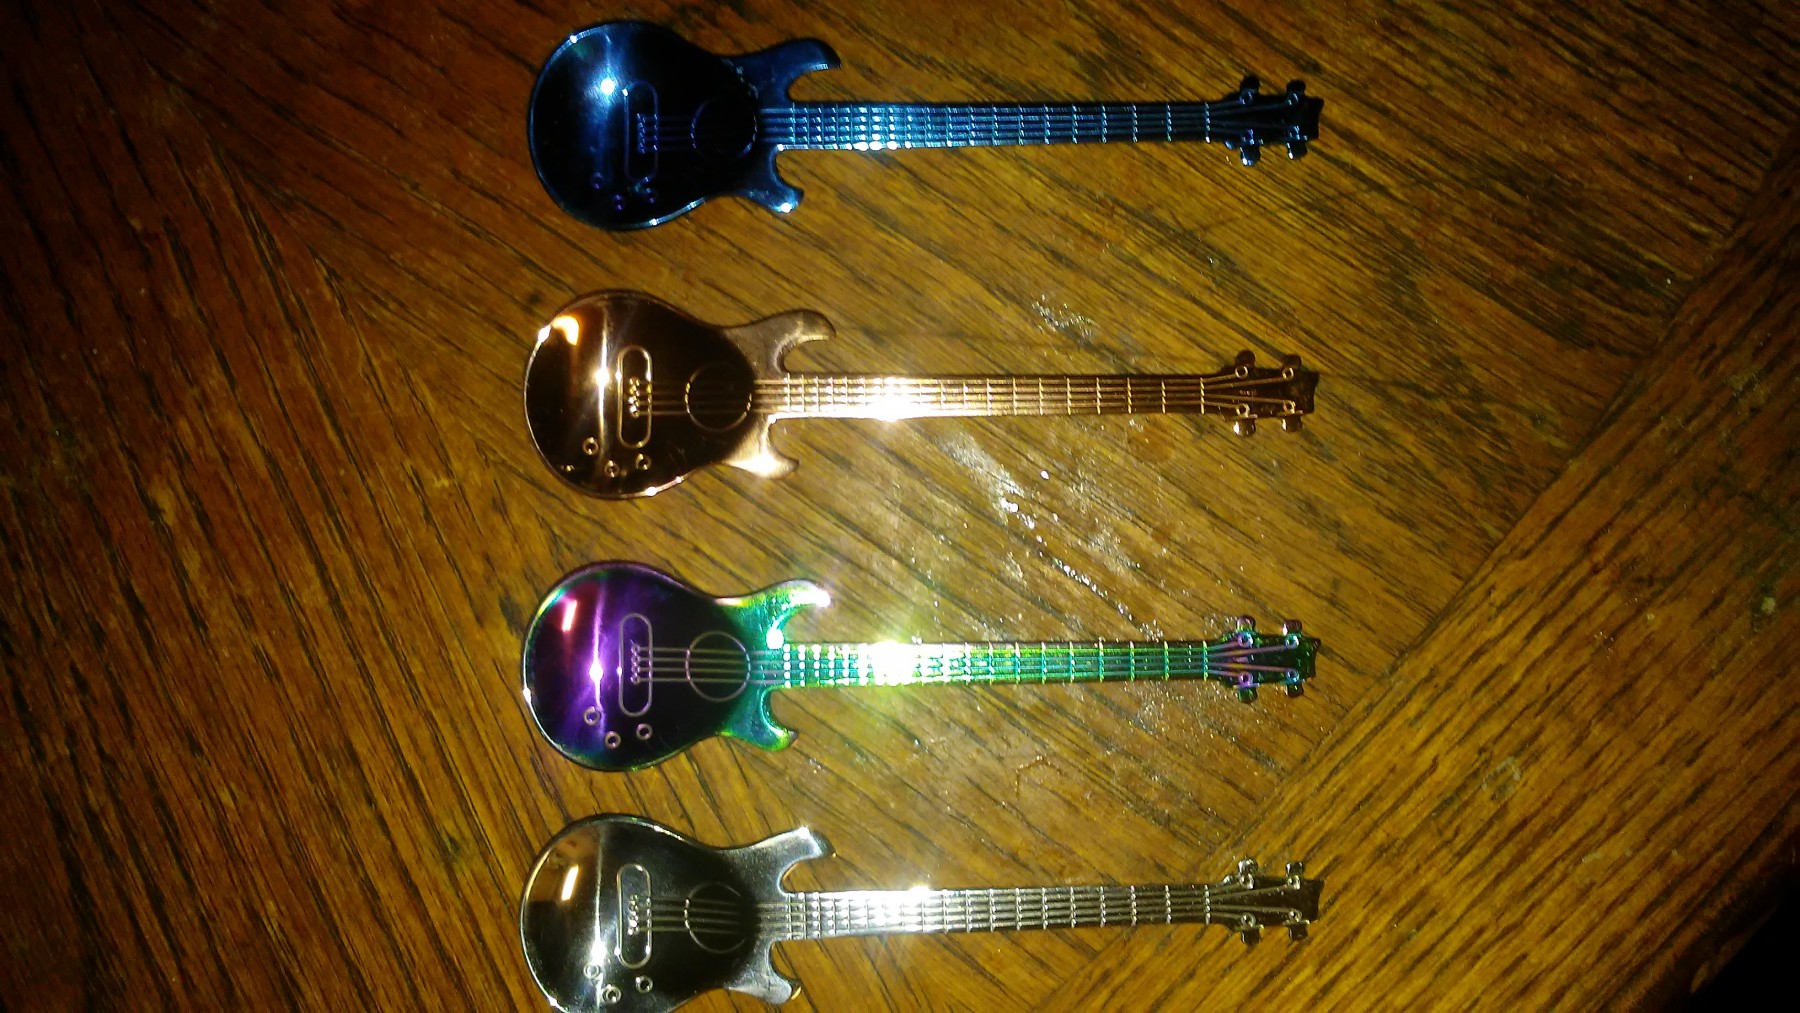 Loving these desert spoons